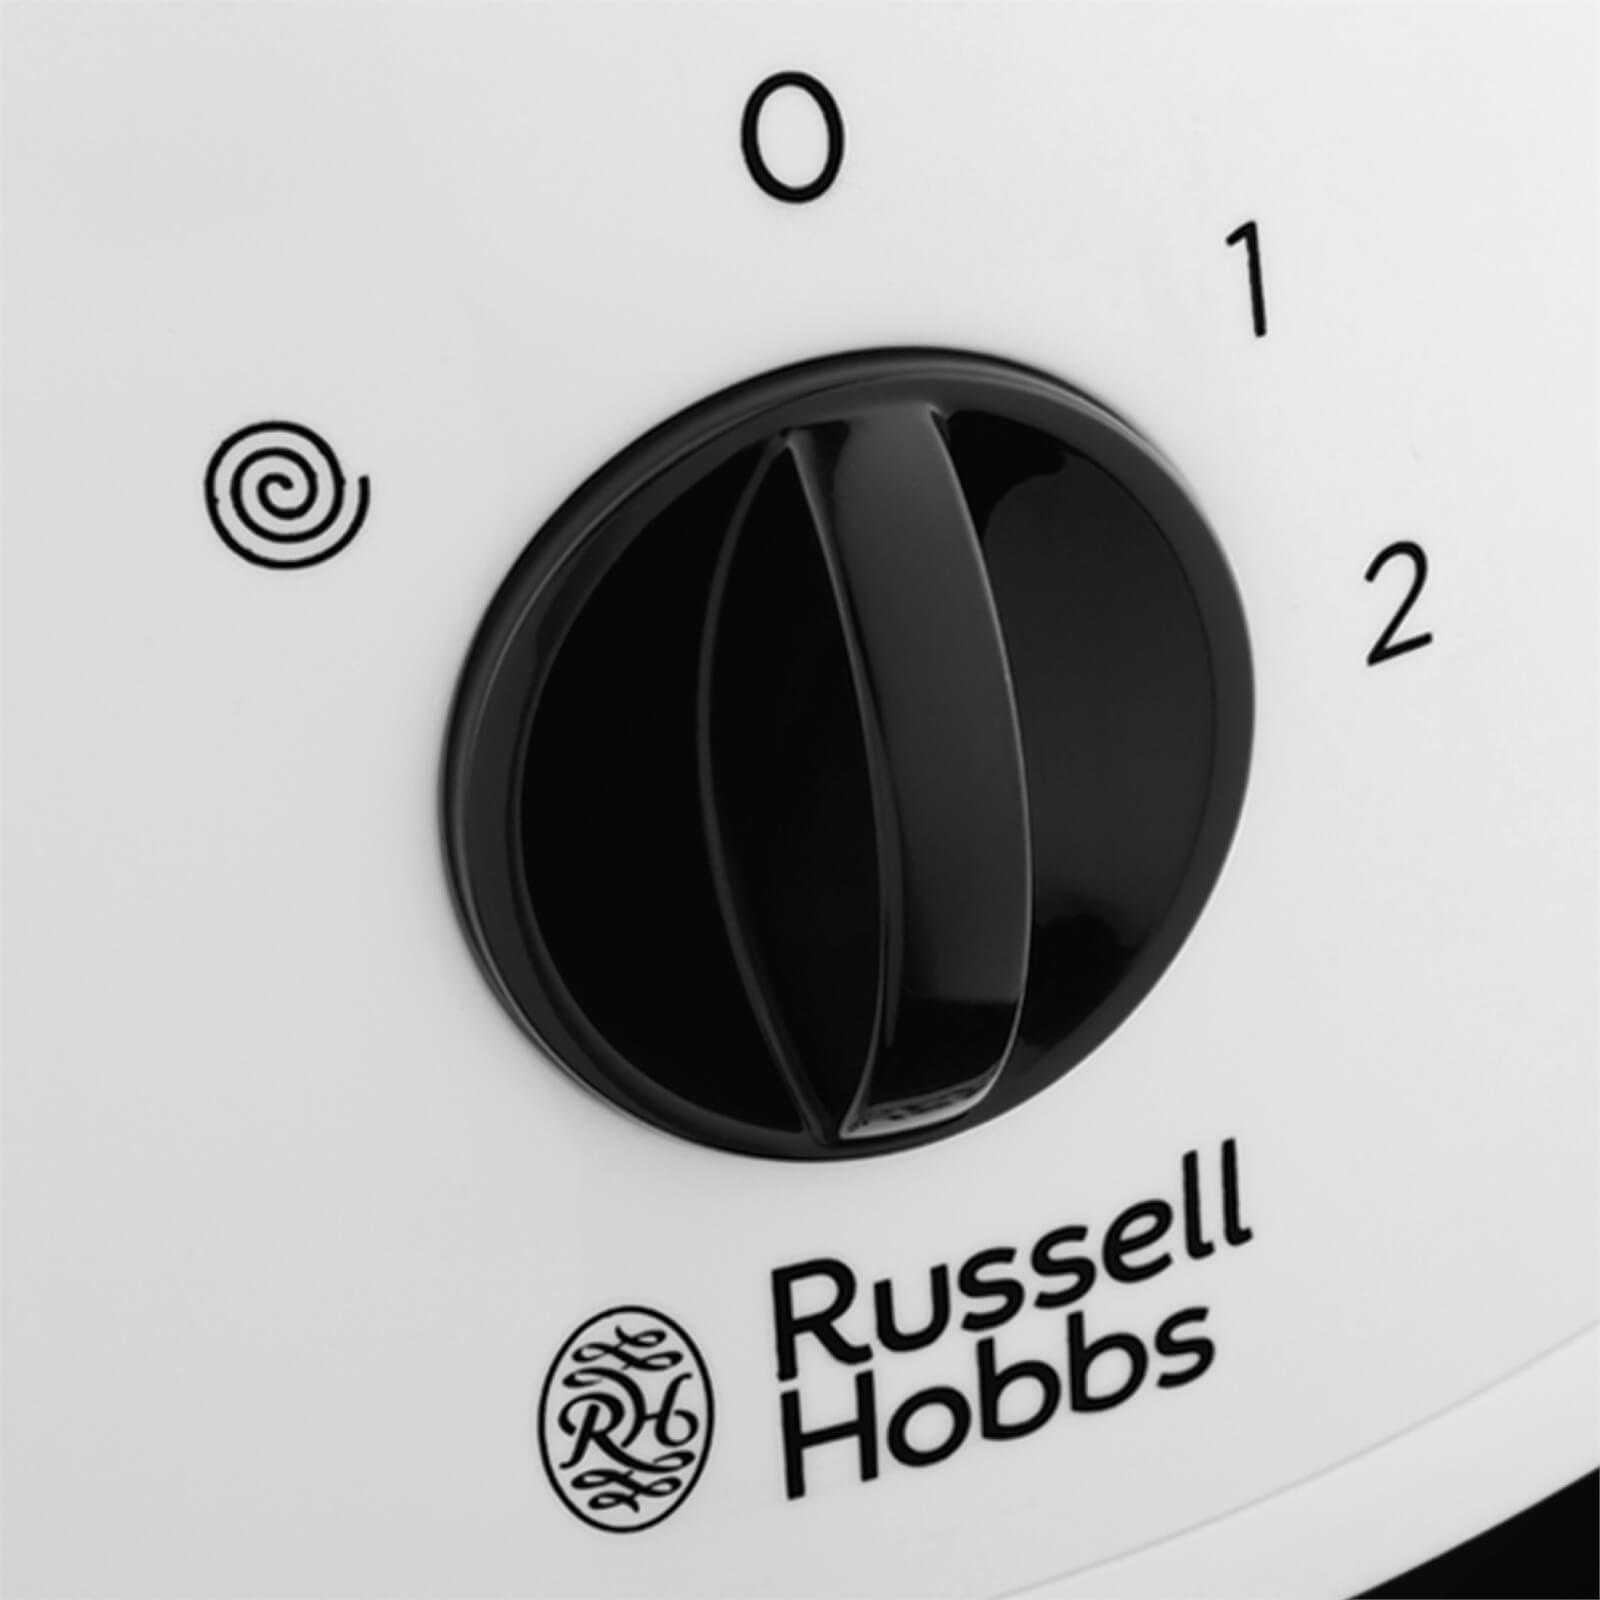 Russell Hobbs Jug Blender